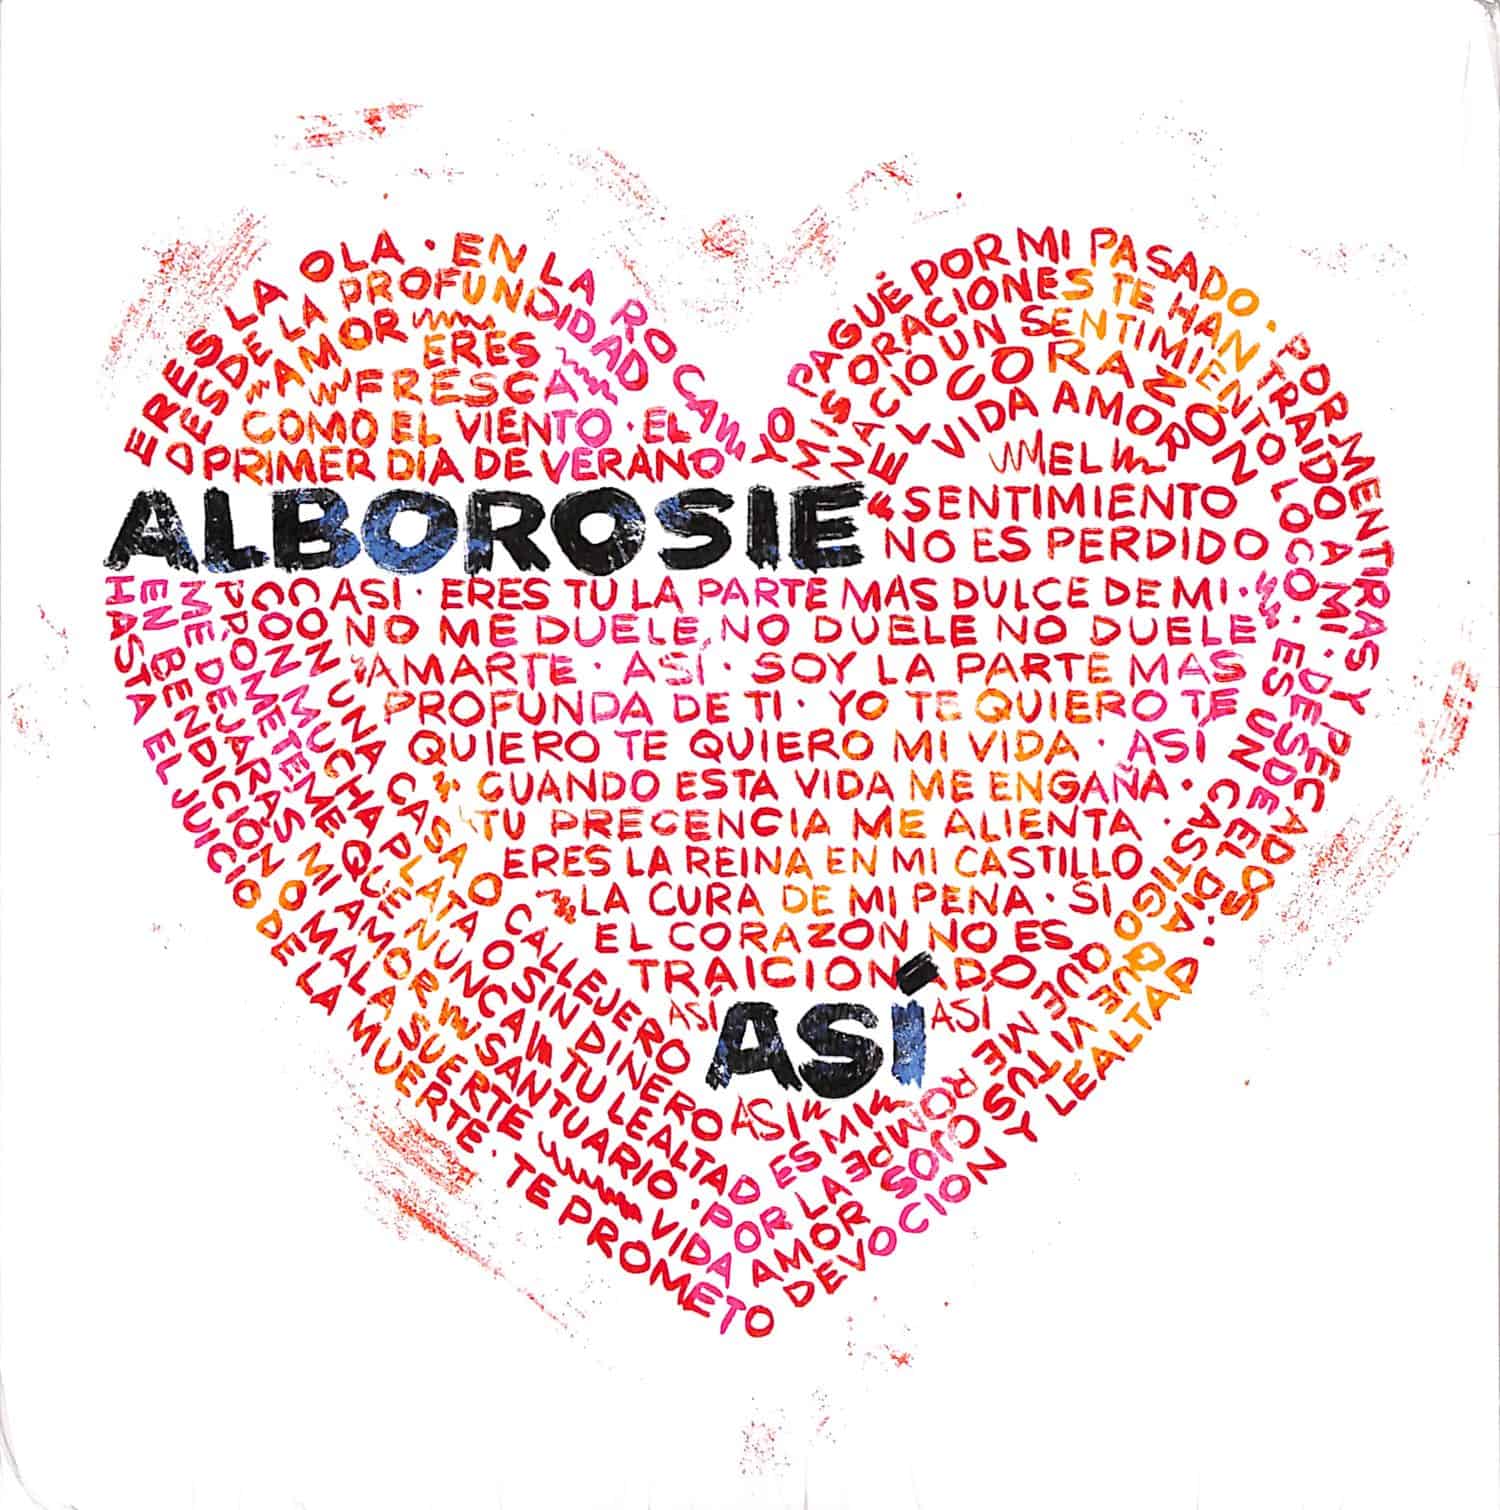 Alborosie - ASI / ASI 